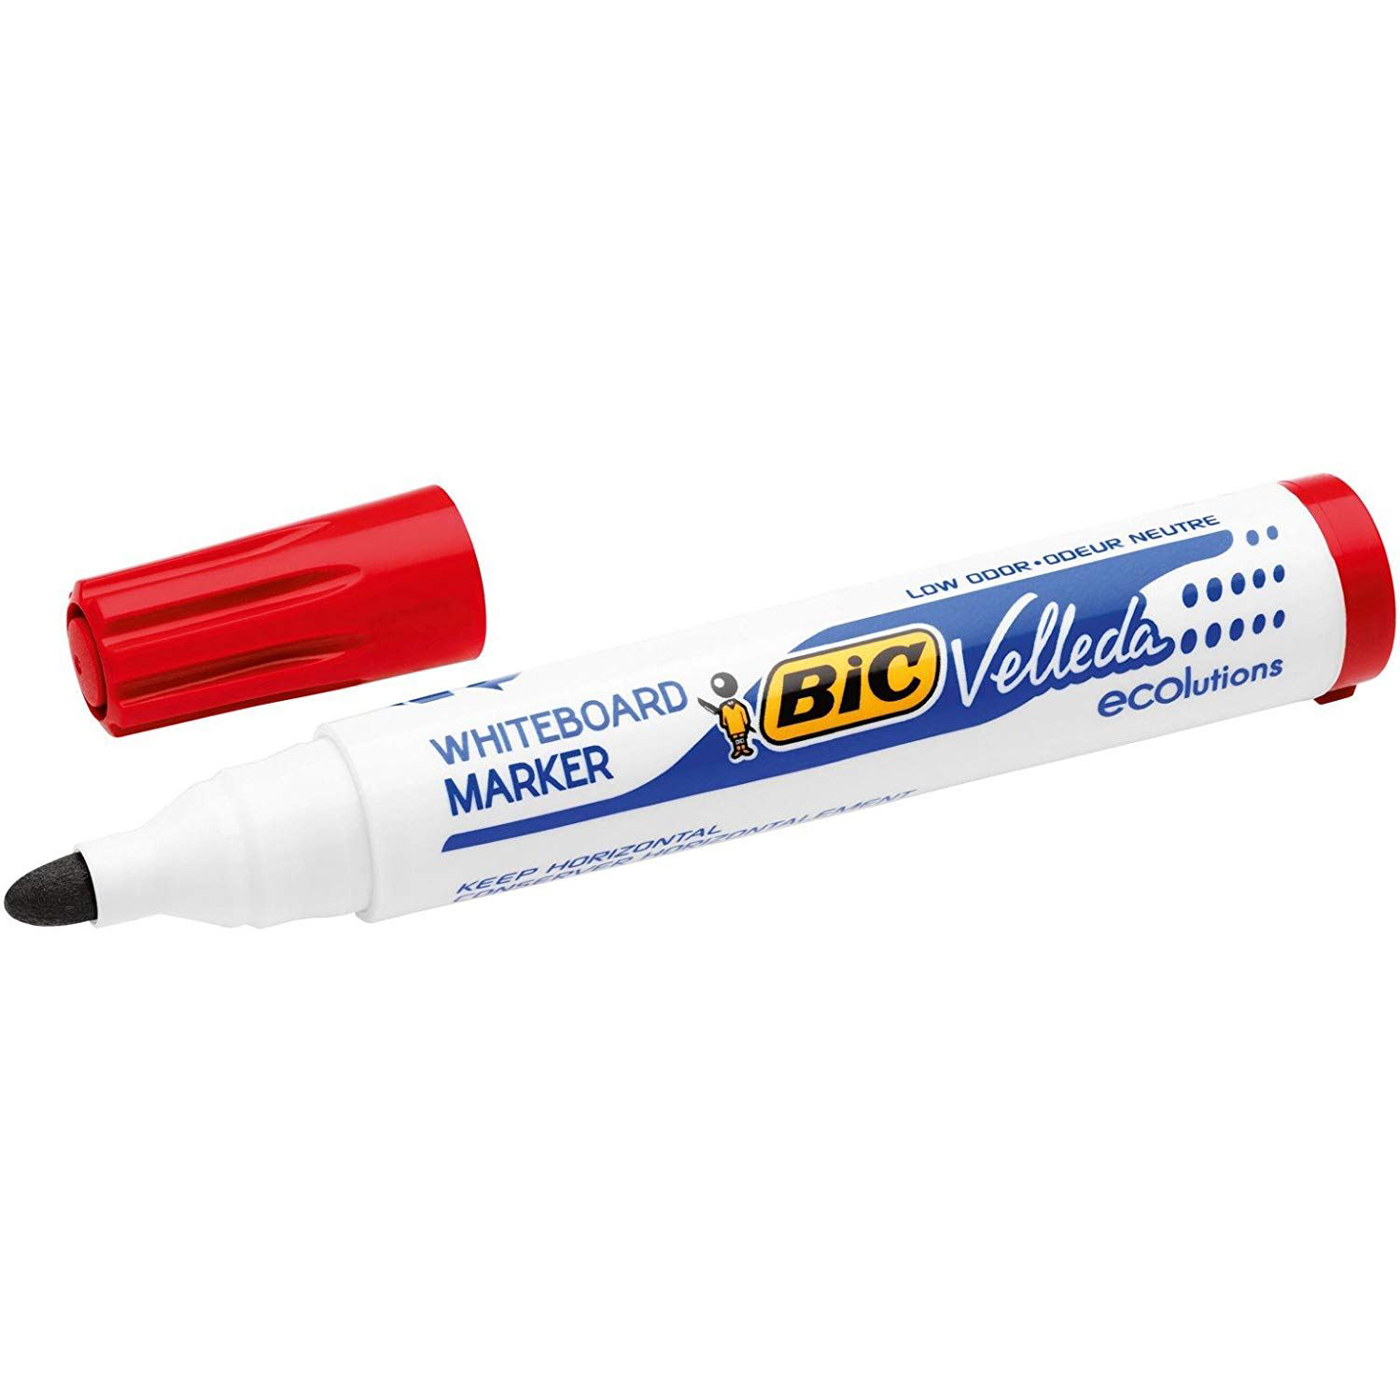 BIC Whiteboard Marker Velleda Bullet Tip Red